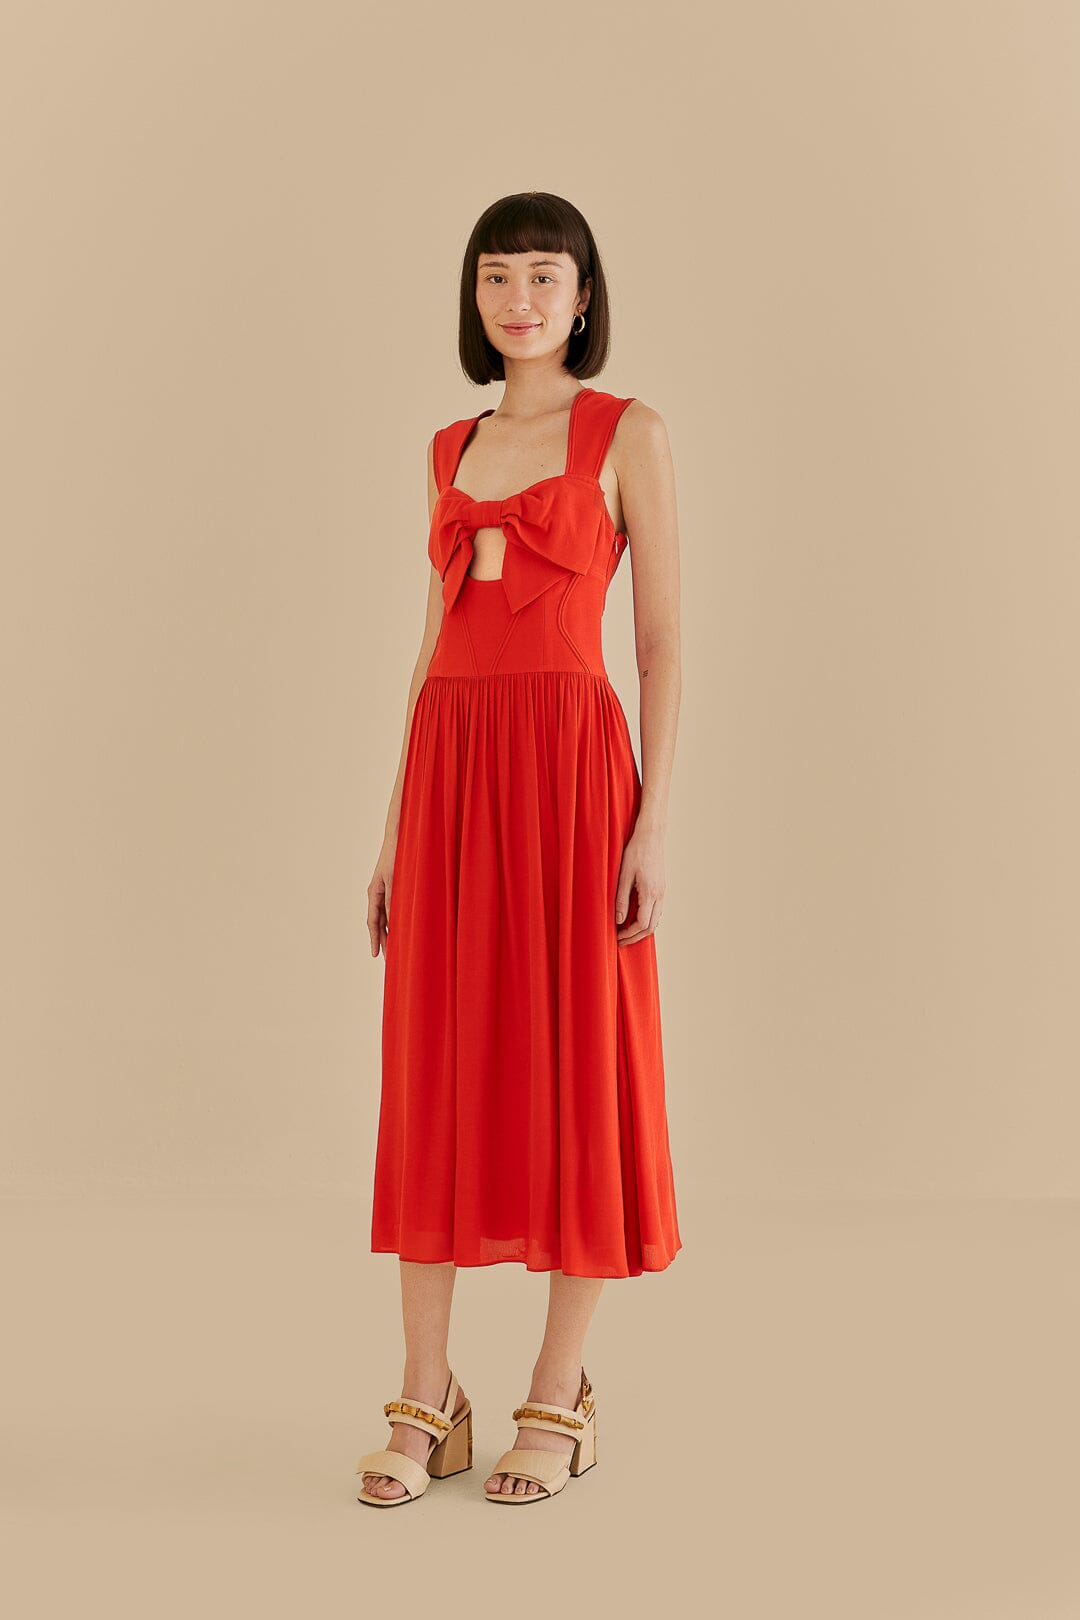 Red Bow Sleeveless Midi Dress